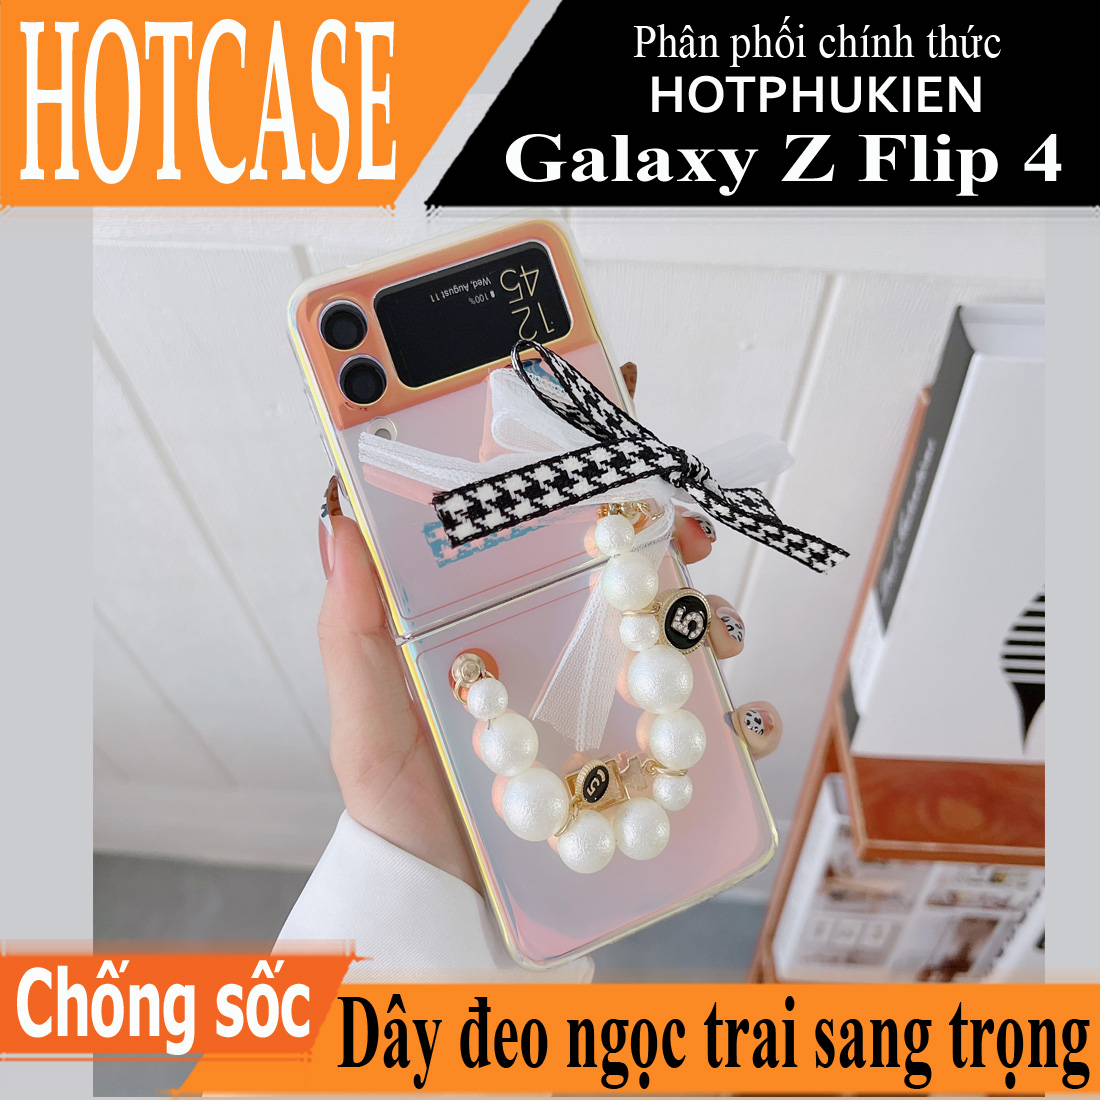 Ốp lưng chống sốc có dây đeo ngọc trai cho Samsung Galaxy Z Flip 4 hiệu HOTCASE Pearl Strap Case (chất liệu cao cấp sang trọng, thiết kế thời trang nữ tính)